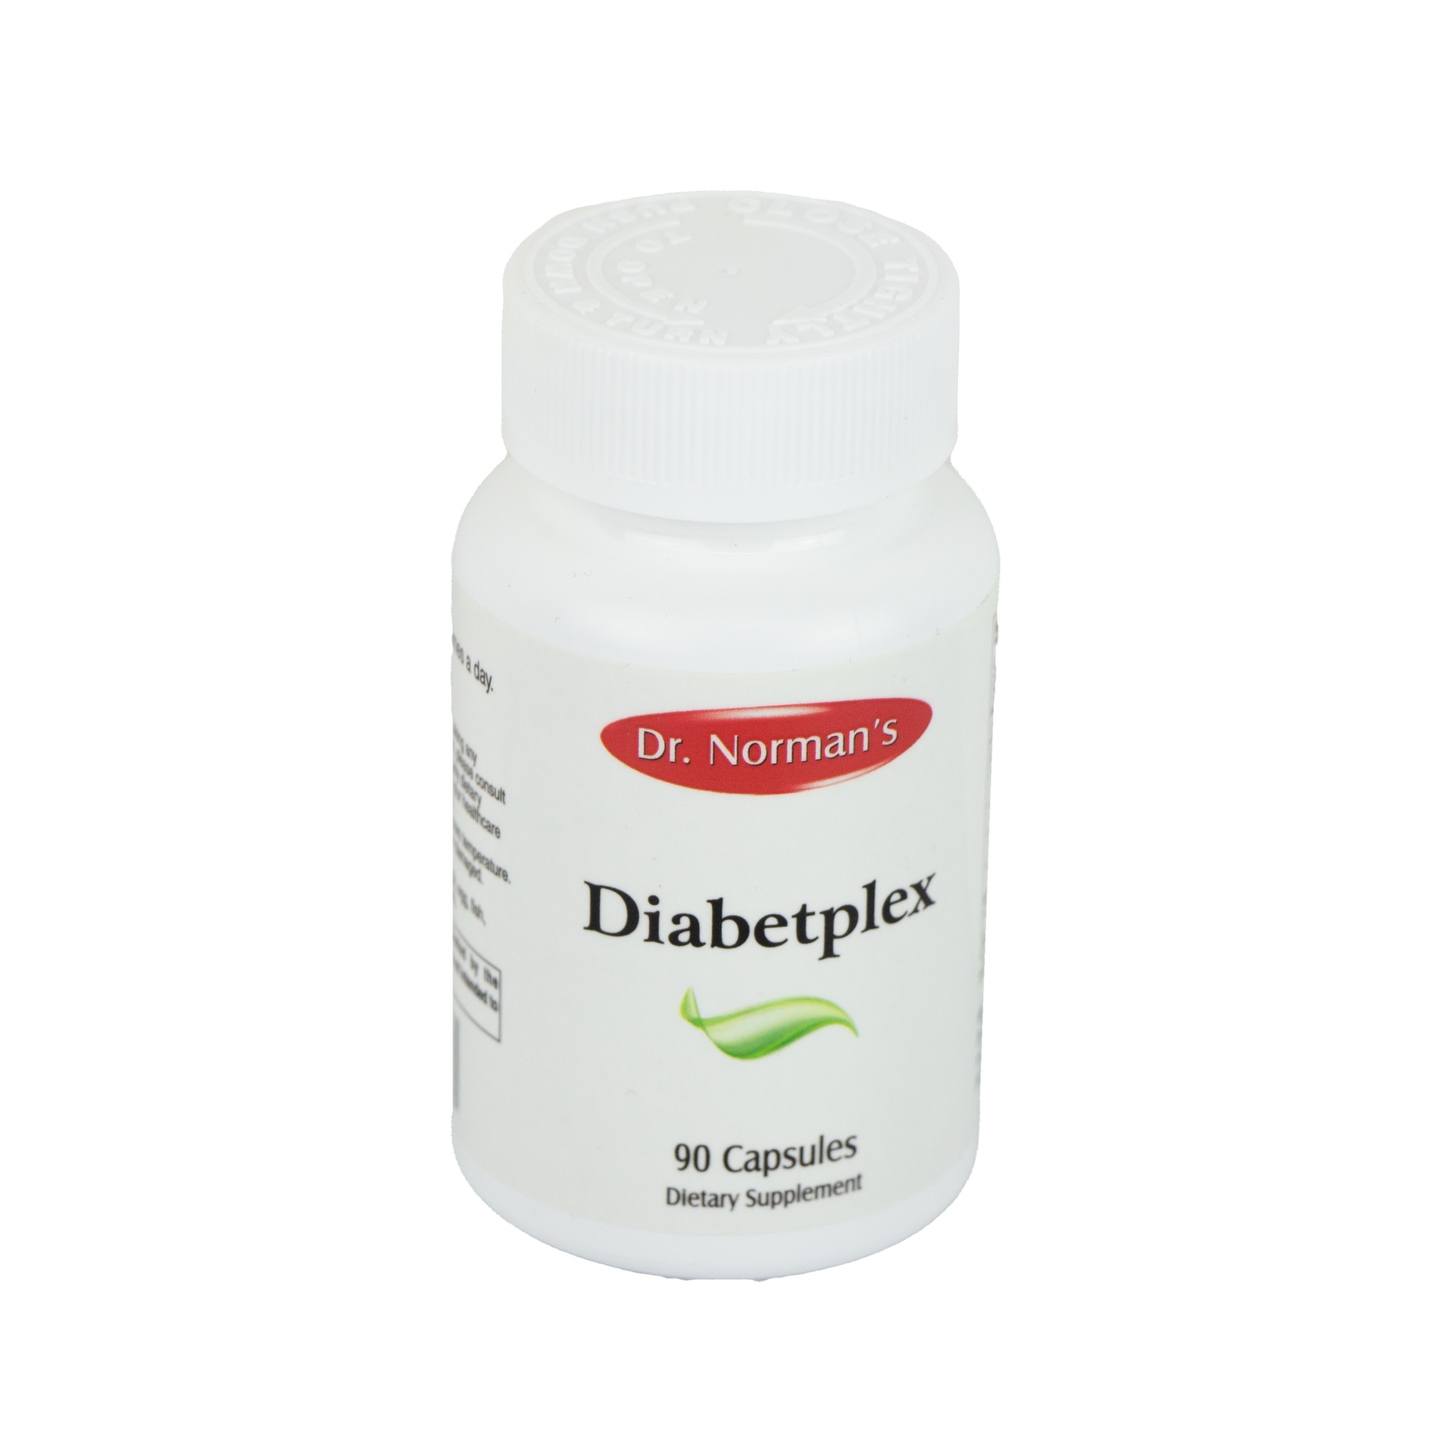 Dr. Norman's Diabetplex